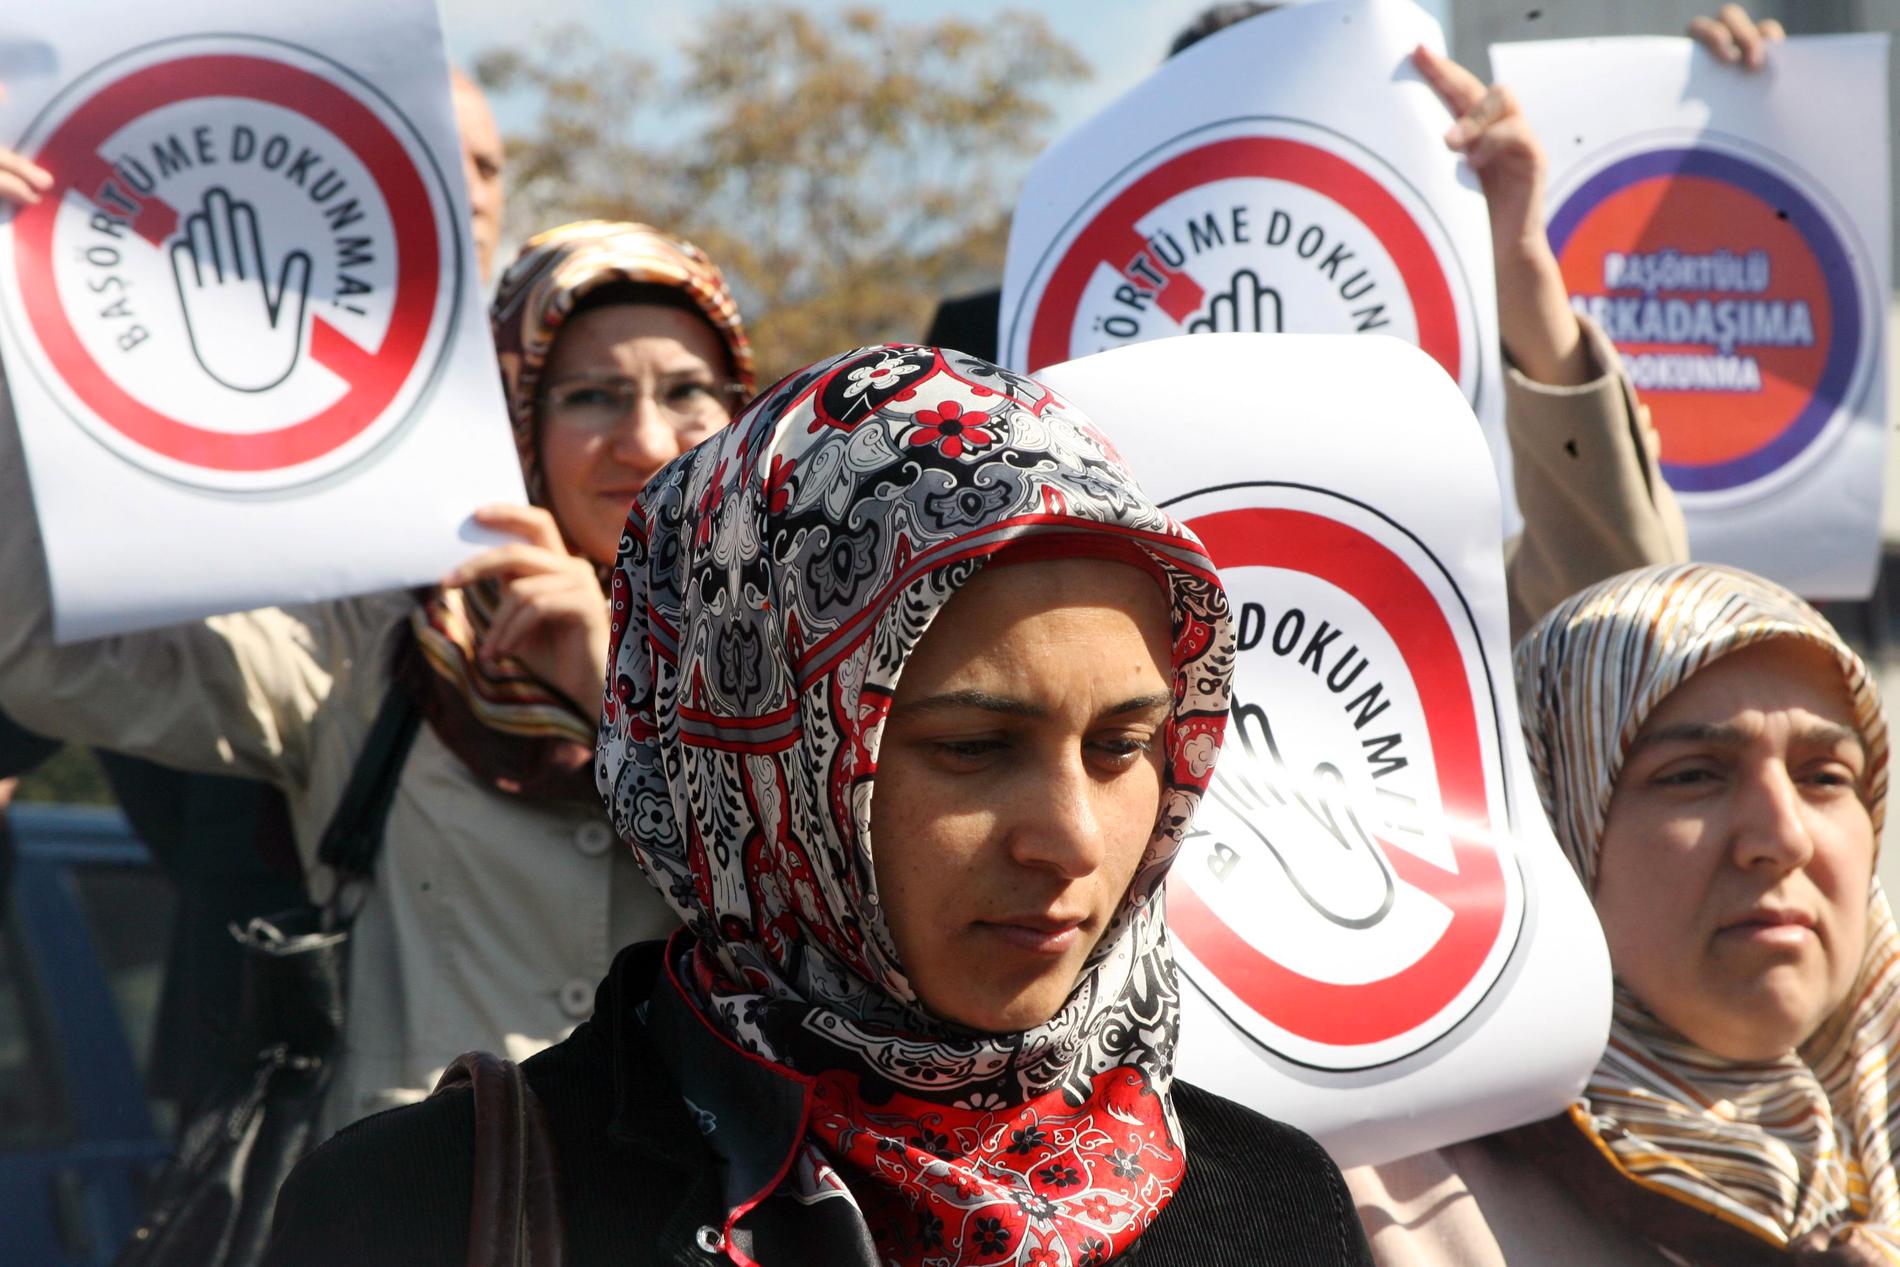 Kvinnor protesterar inför turkiets högsta domstol 2008 strax innan förbudet mot slöja lyftes. ”Rör inte min huvudduk” står det på affischerna. 